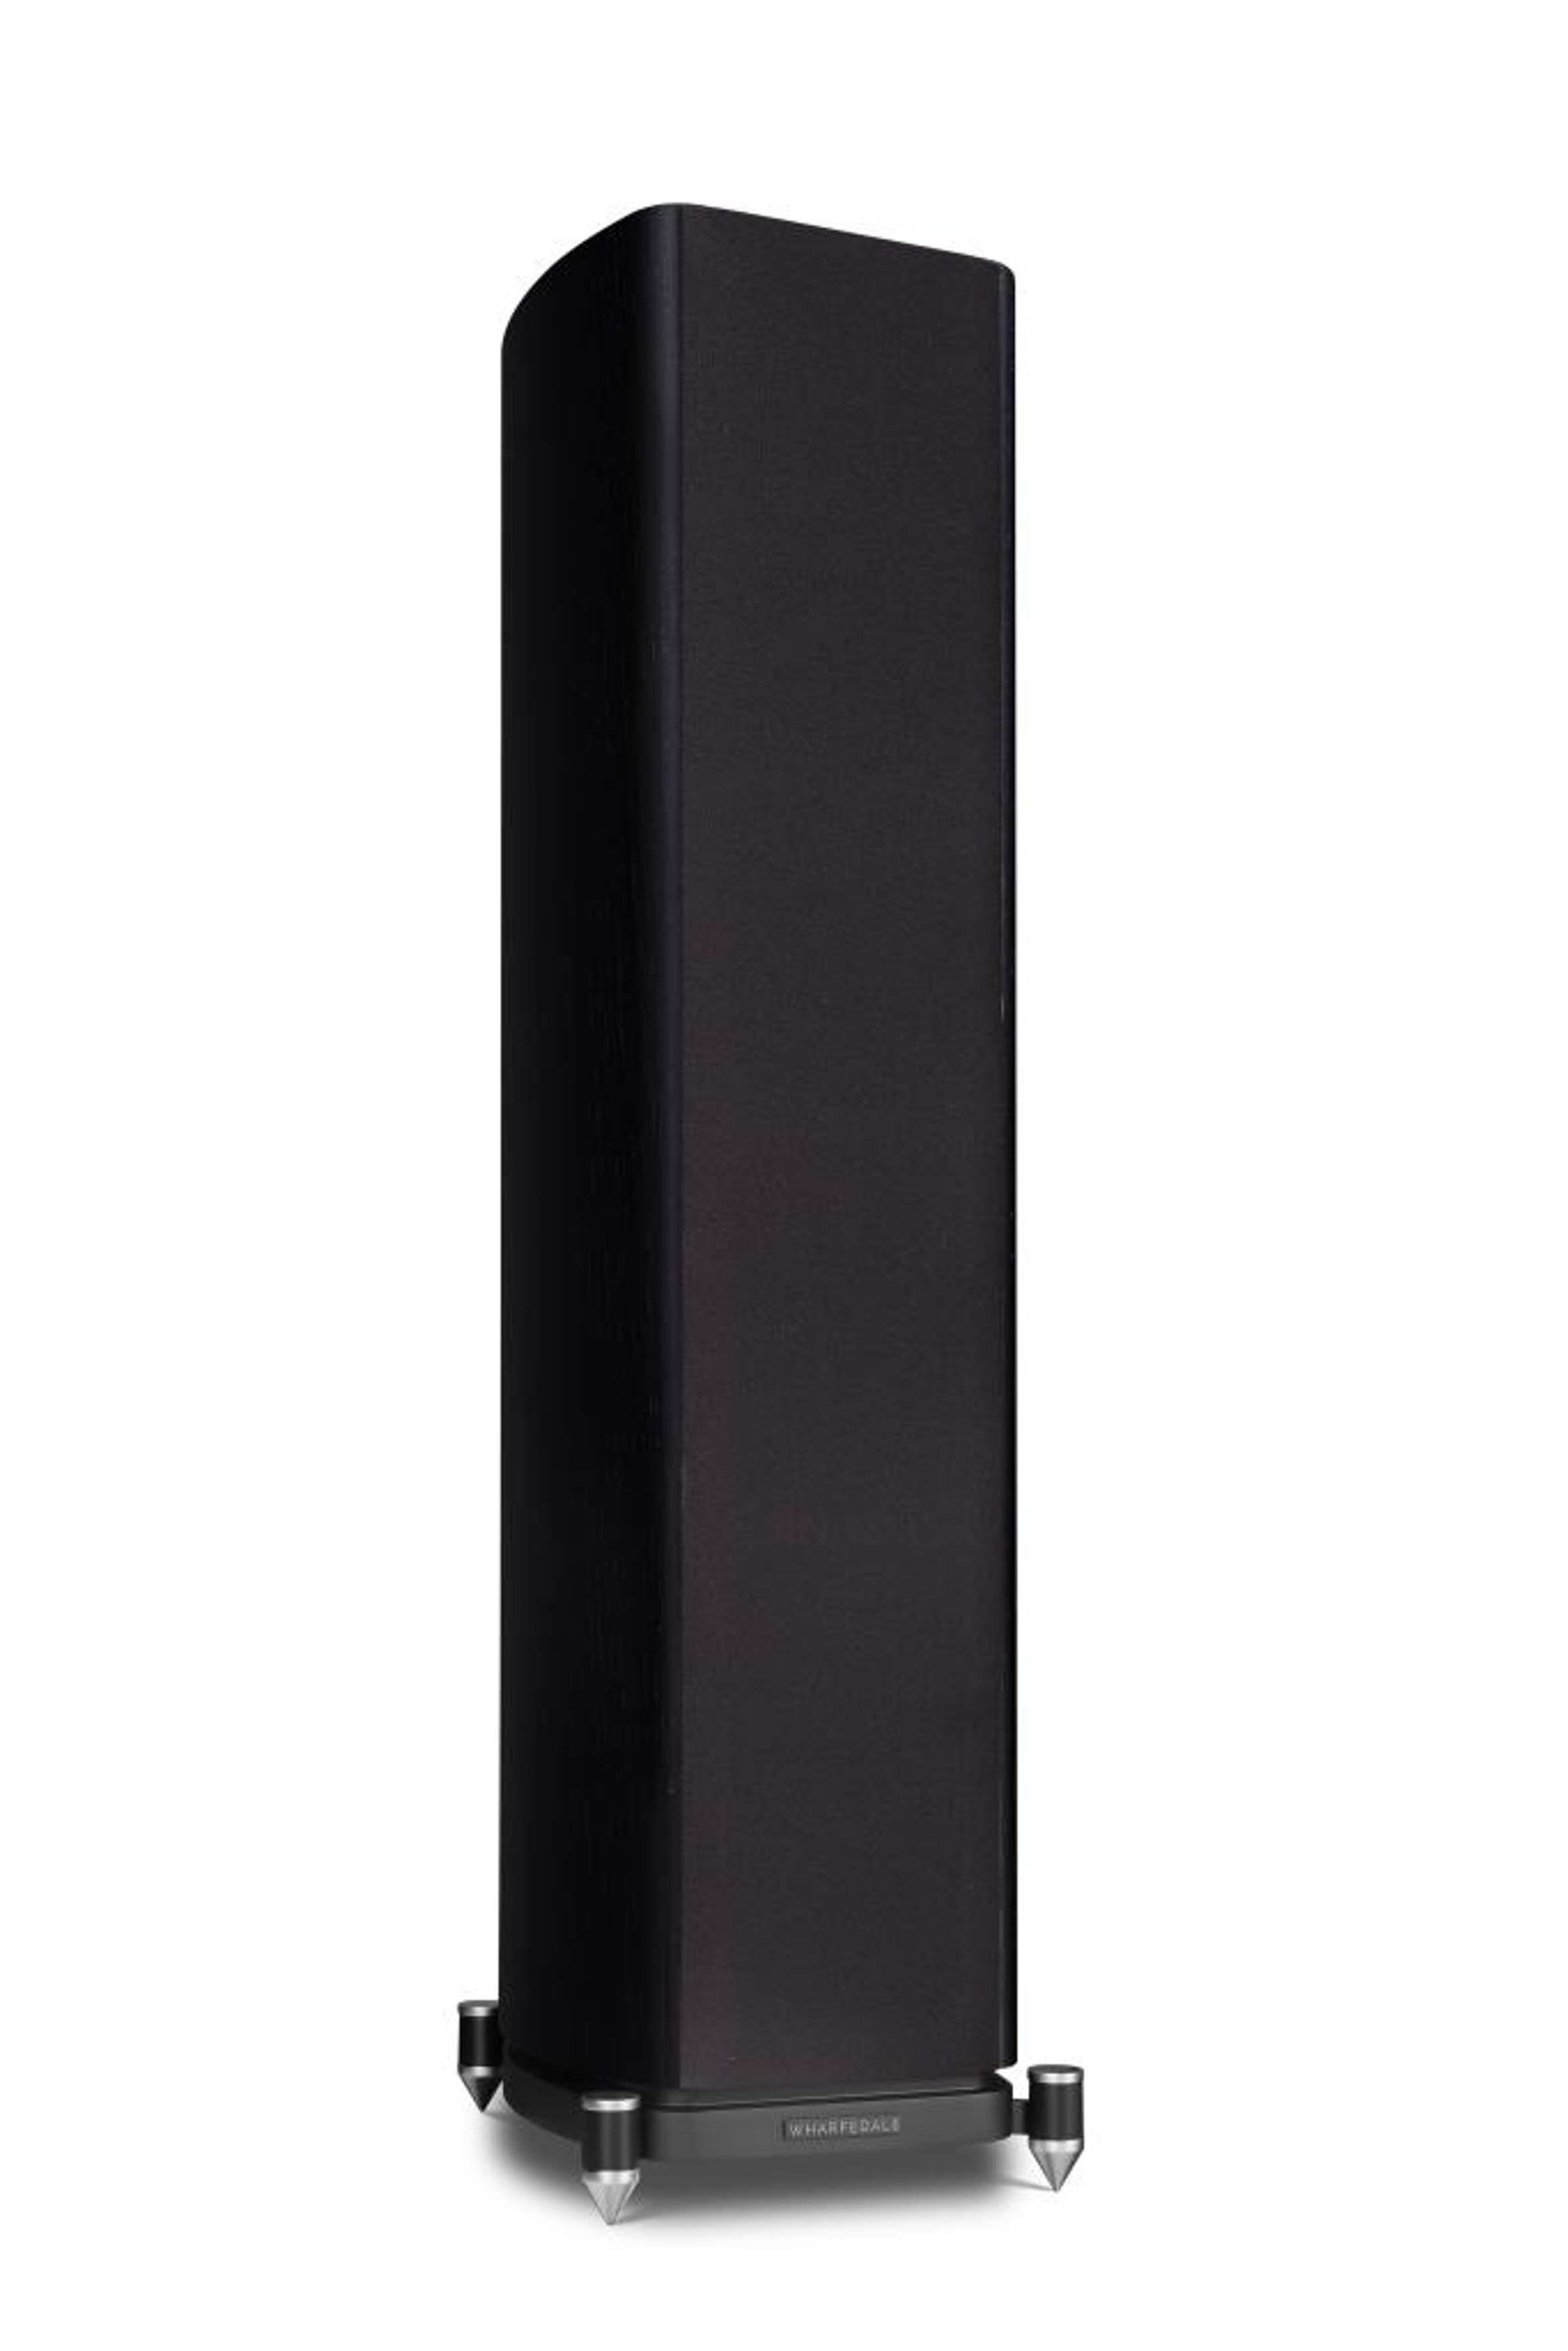 Bassreflex möglich Sockel) schwarz WHARFEDALE   4.3 (wandnahe Aufstellung im EVO durch Stand-Lautsprecher